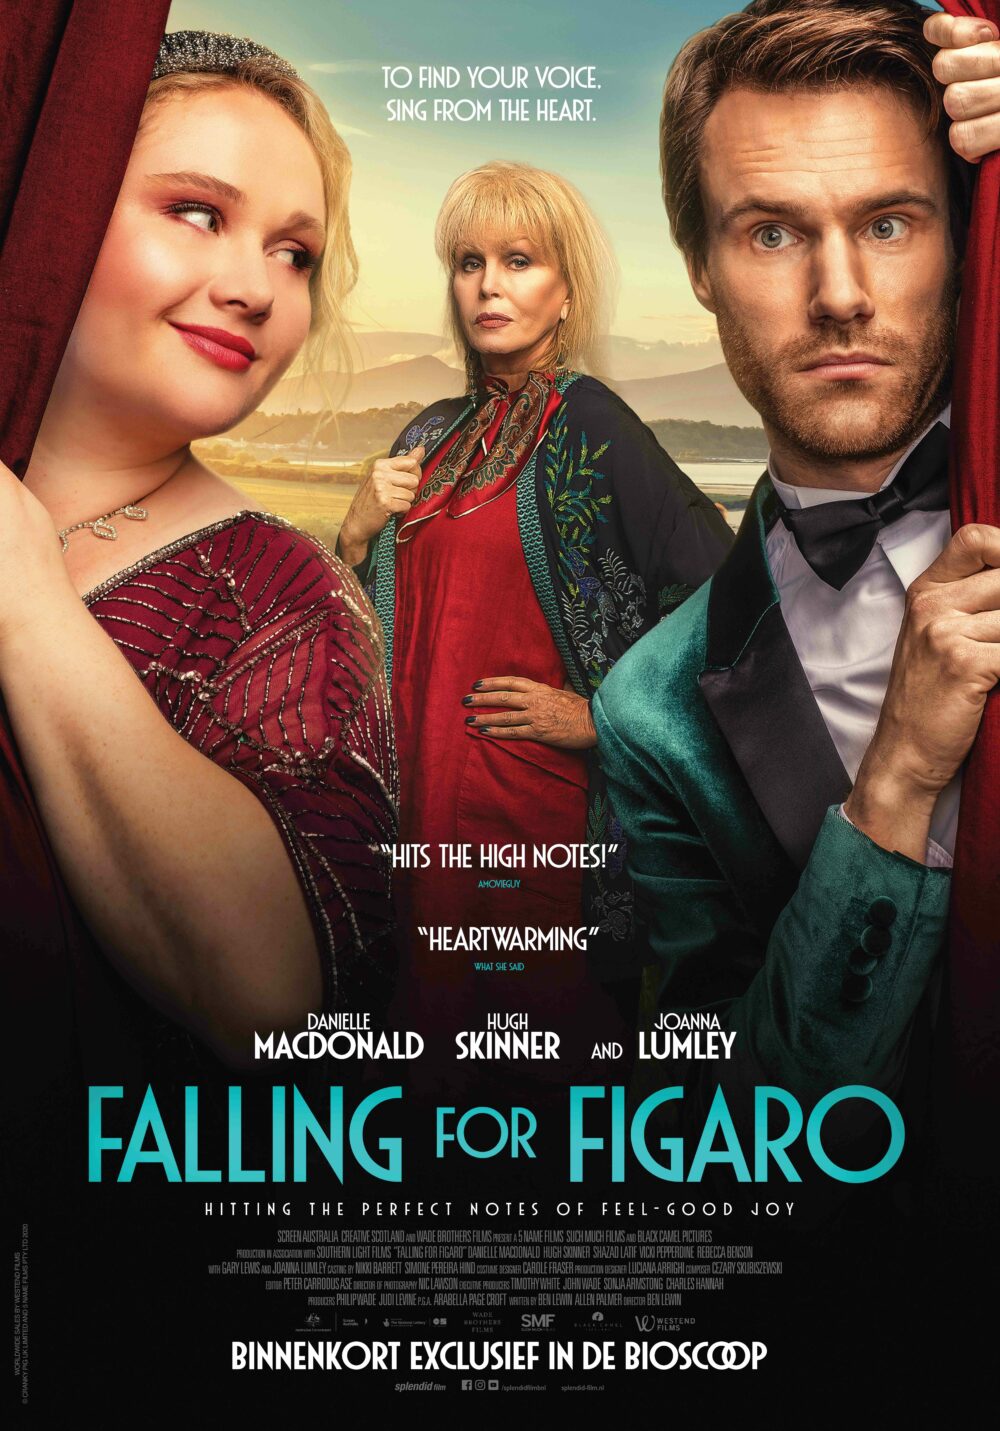 Falling-For-Figaro_ps_1_jpg_sd-high.jpg